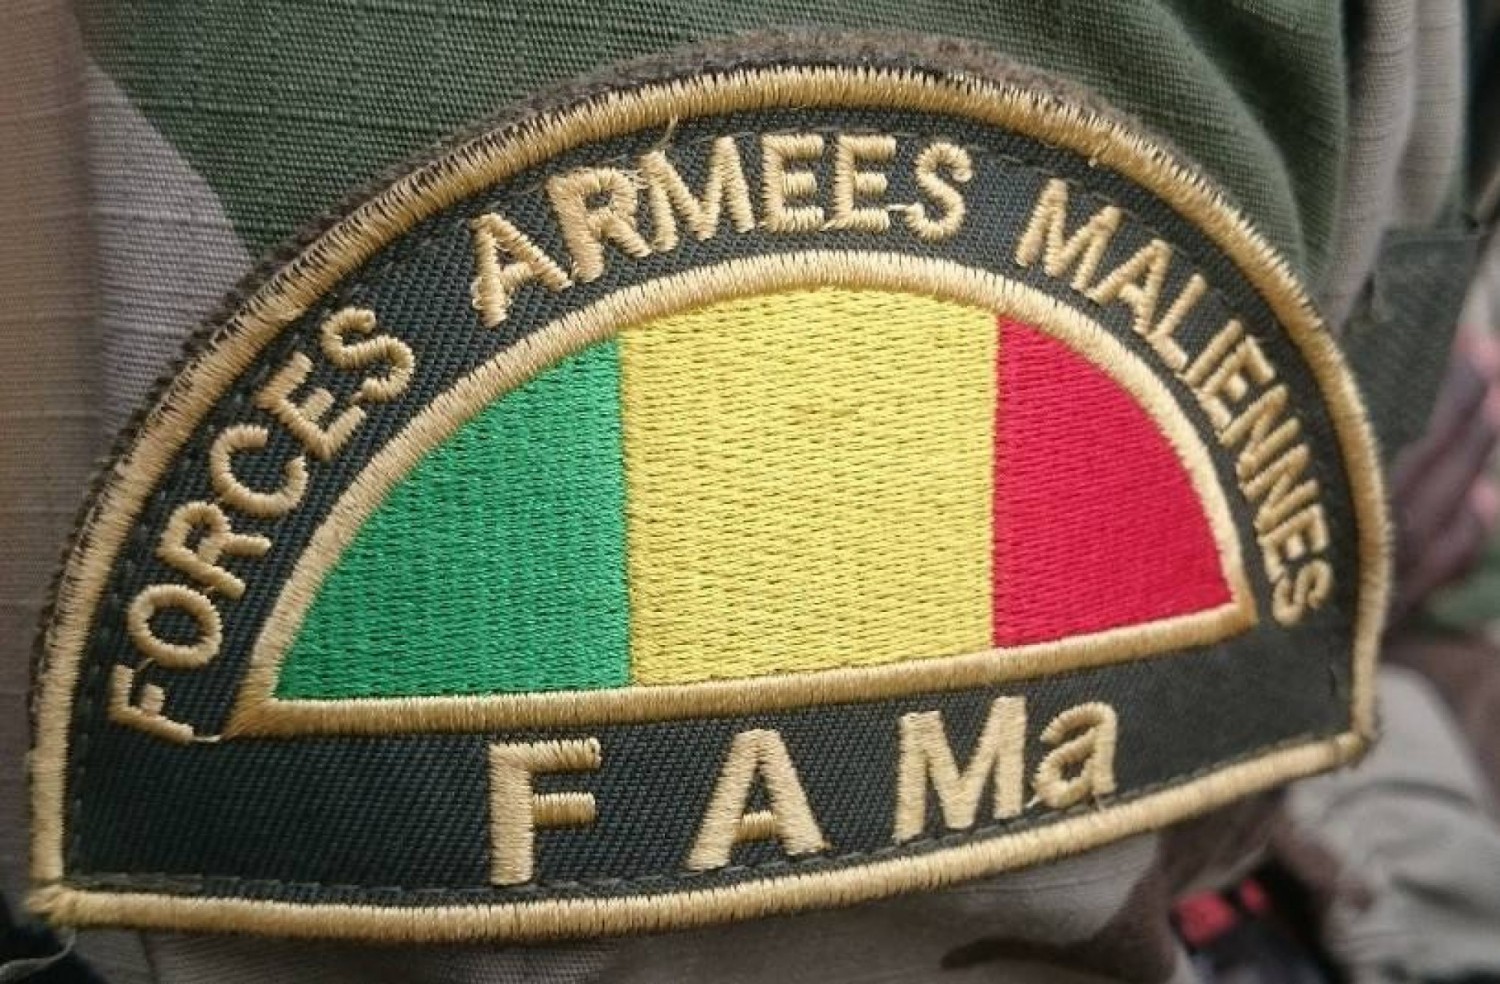 Mali : Un détachement de l'armée tombe dans une embuscade à Ansongo, deux terroristes neutralisés